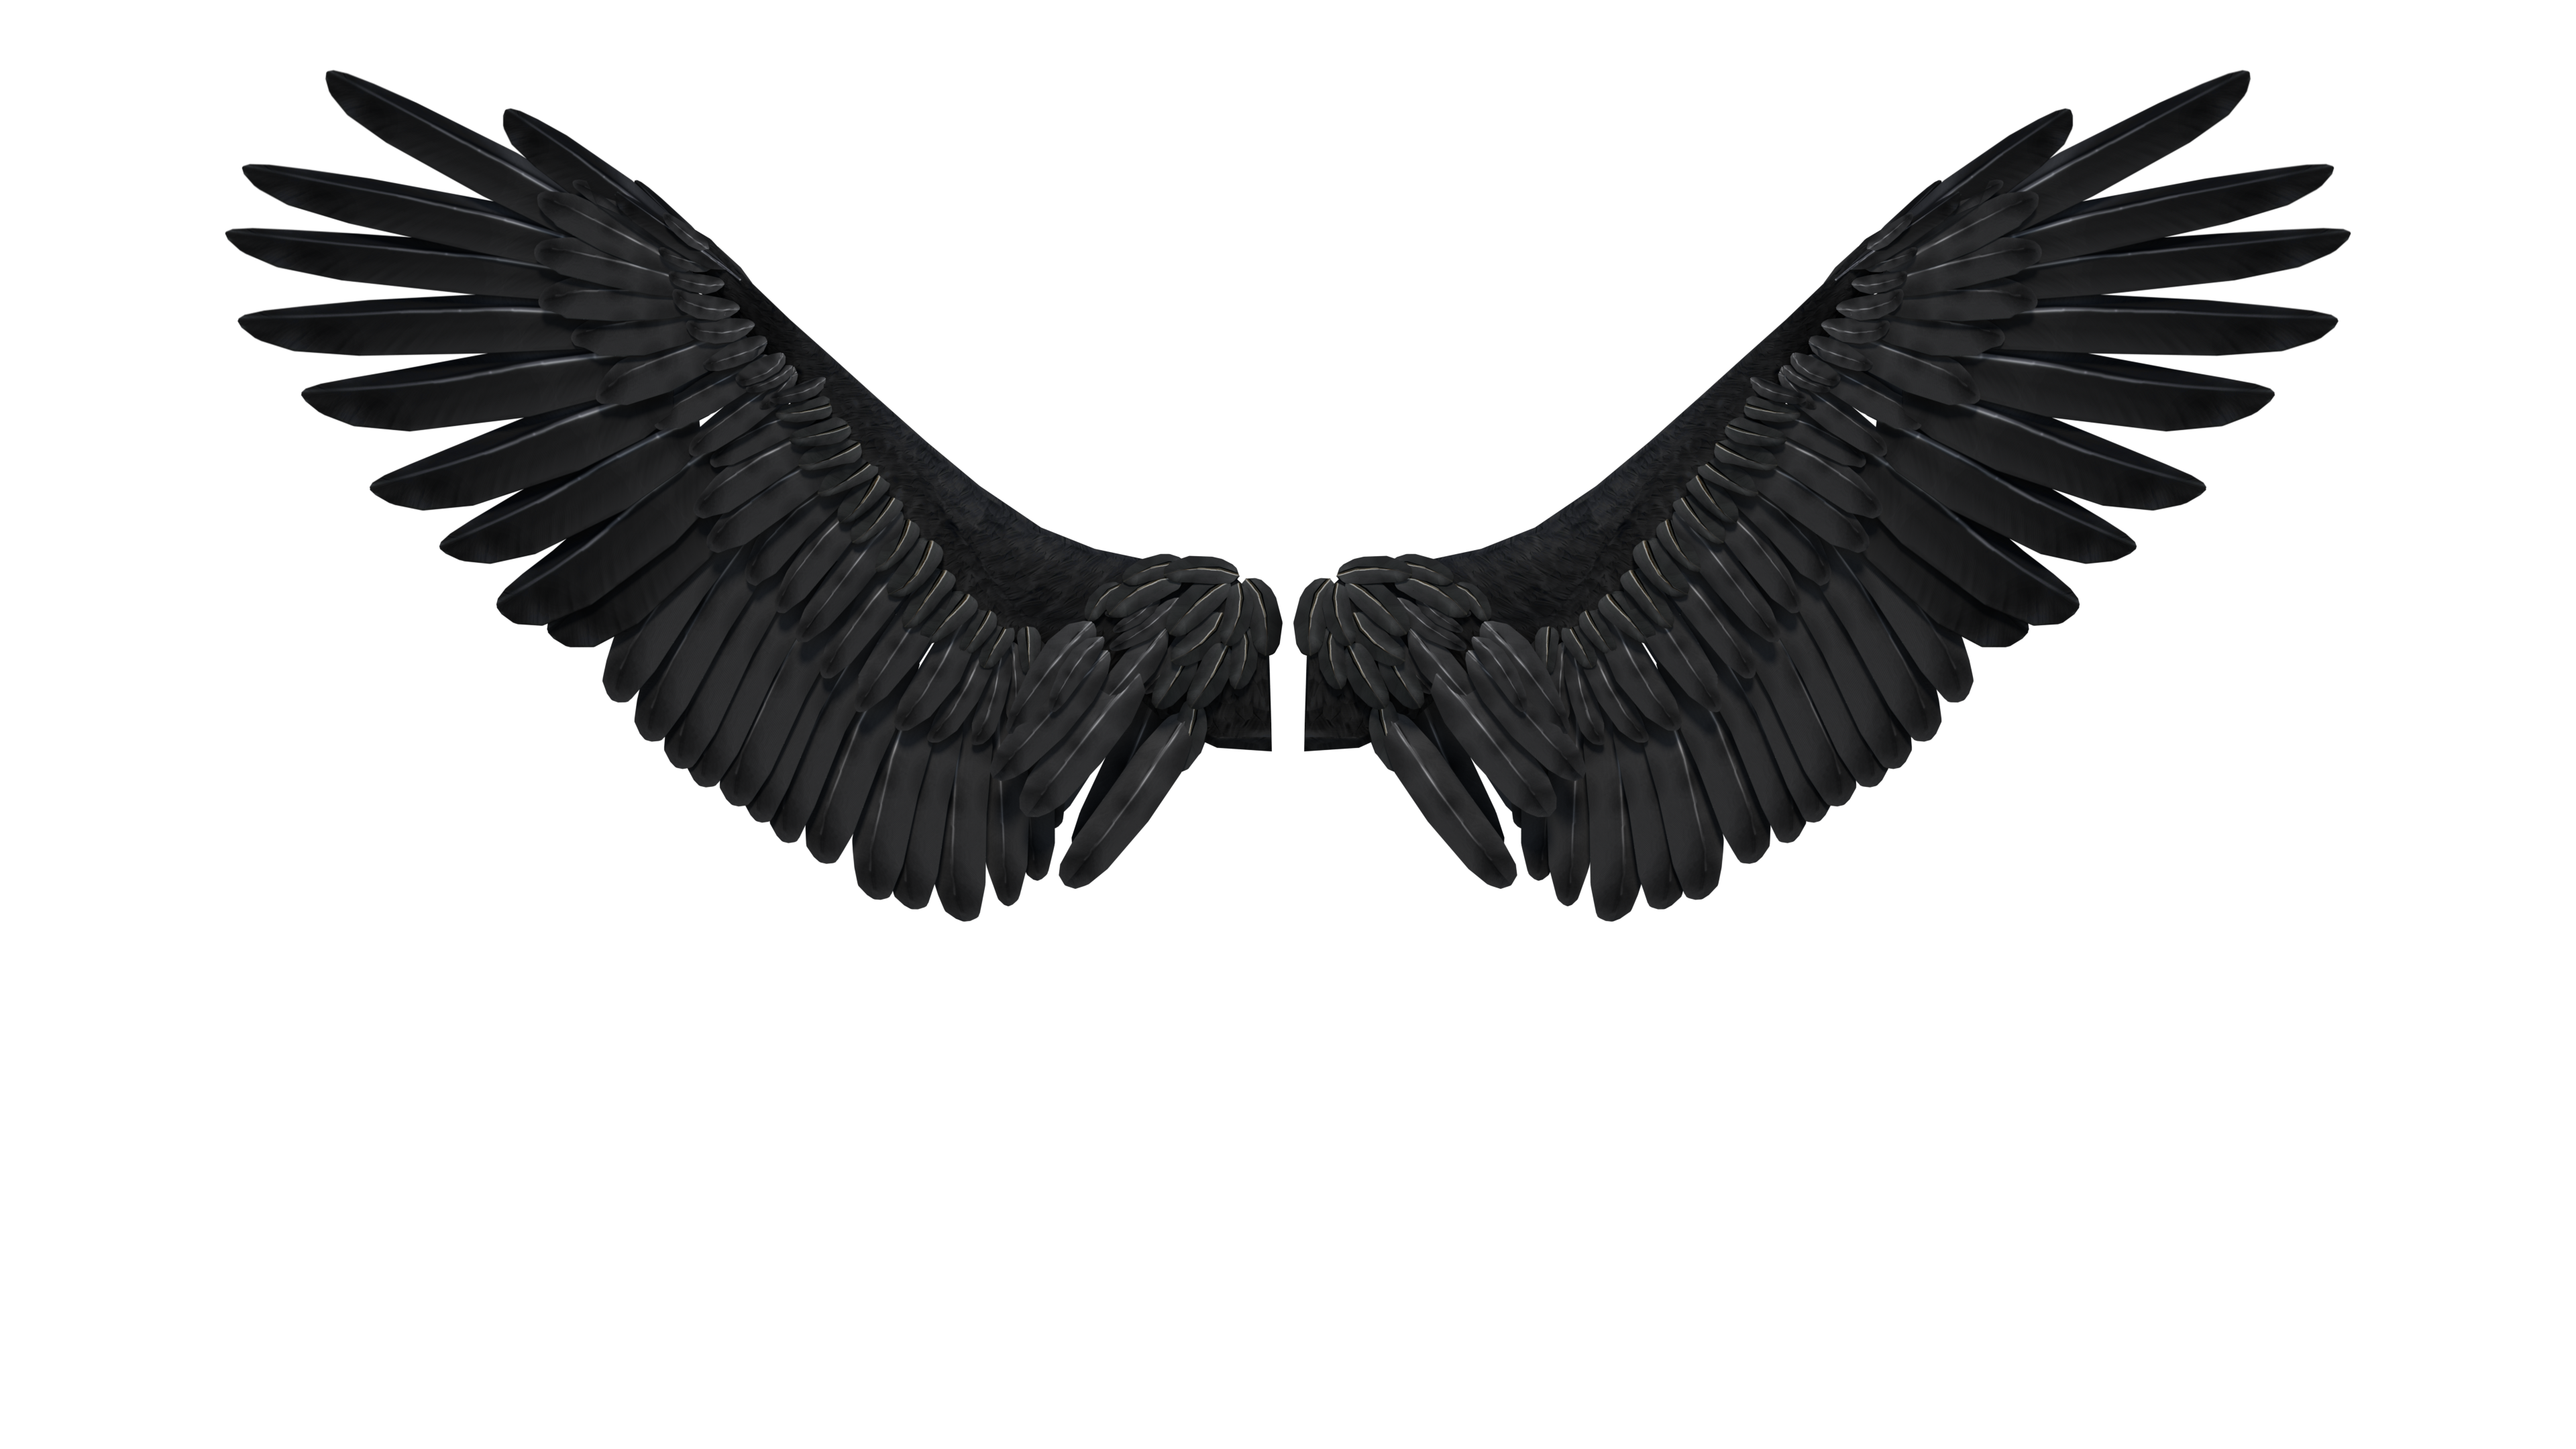 Dark Angel Wings PNG HD Quality